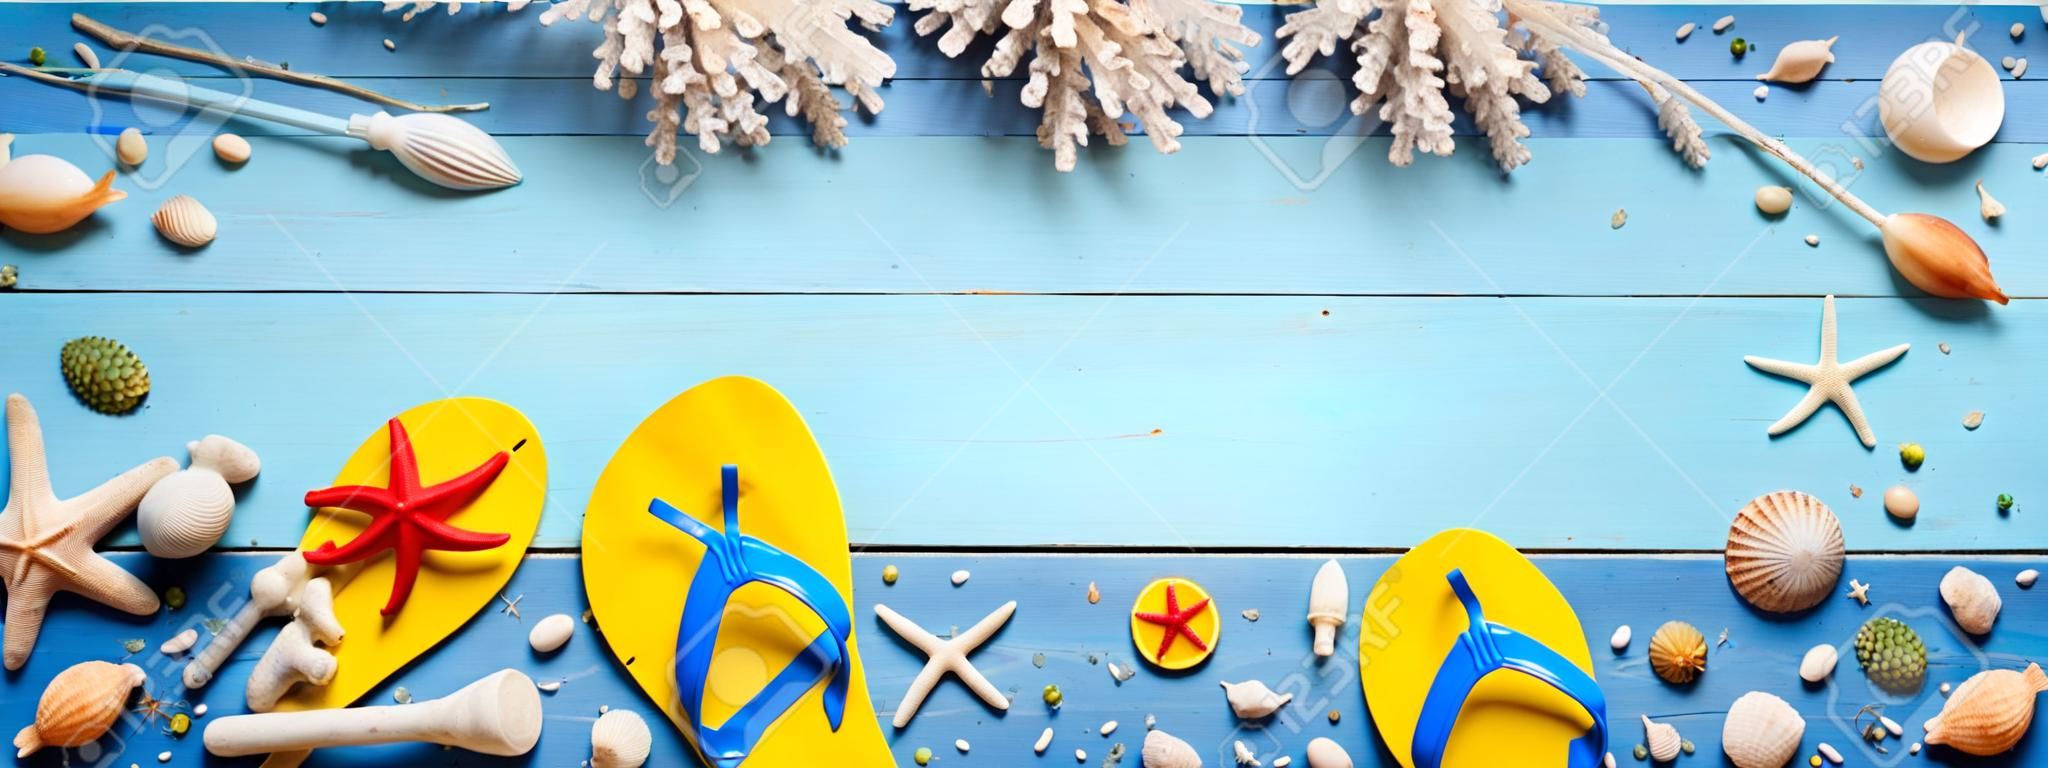 Пляжные аксессуары на голубой доске - Летний праздничный баннер